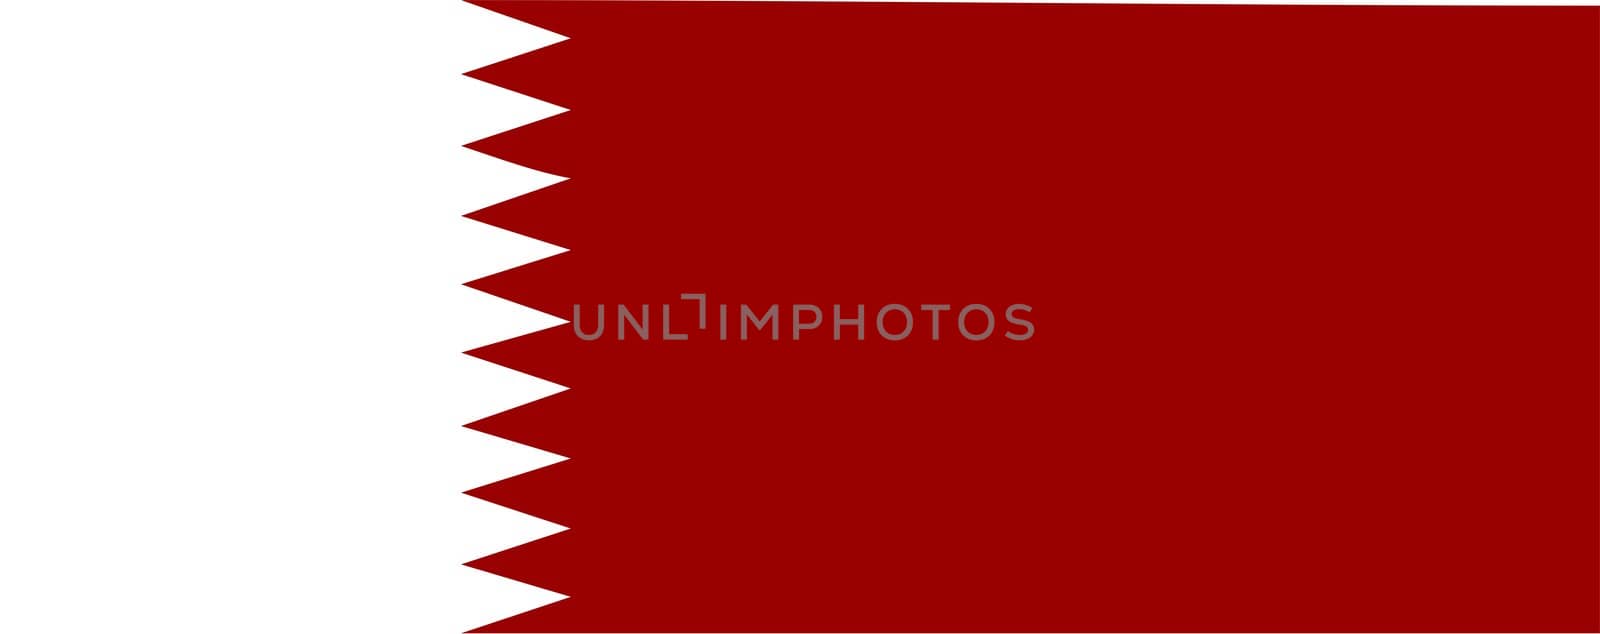 Qatar Flag by tony4urban